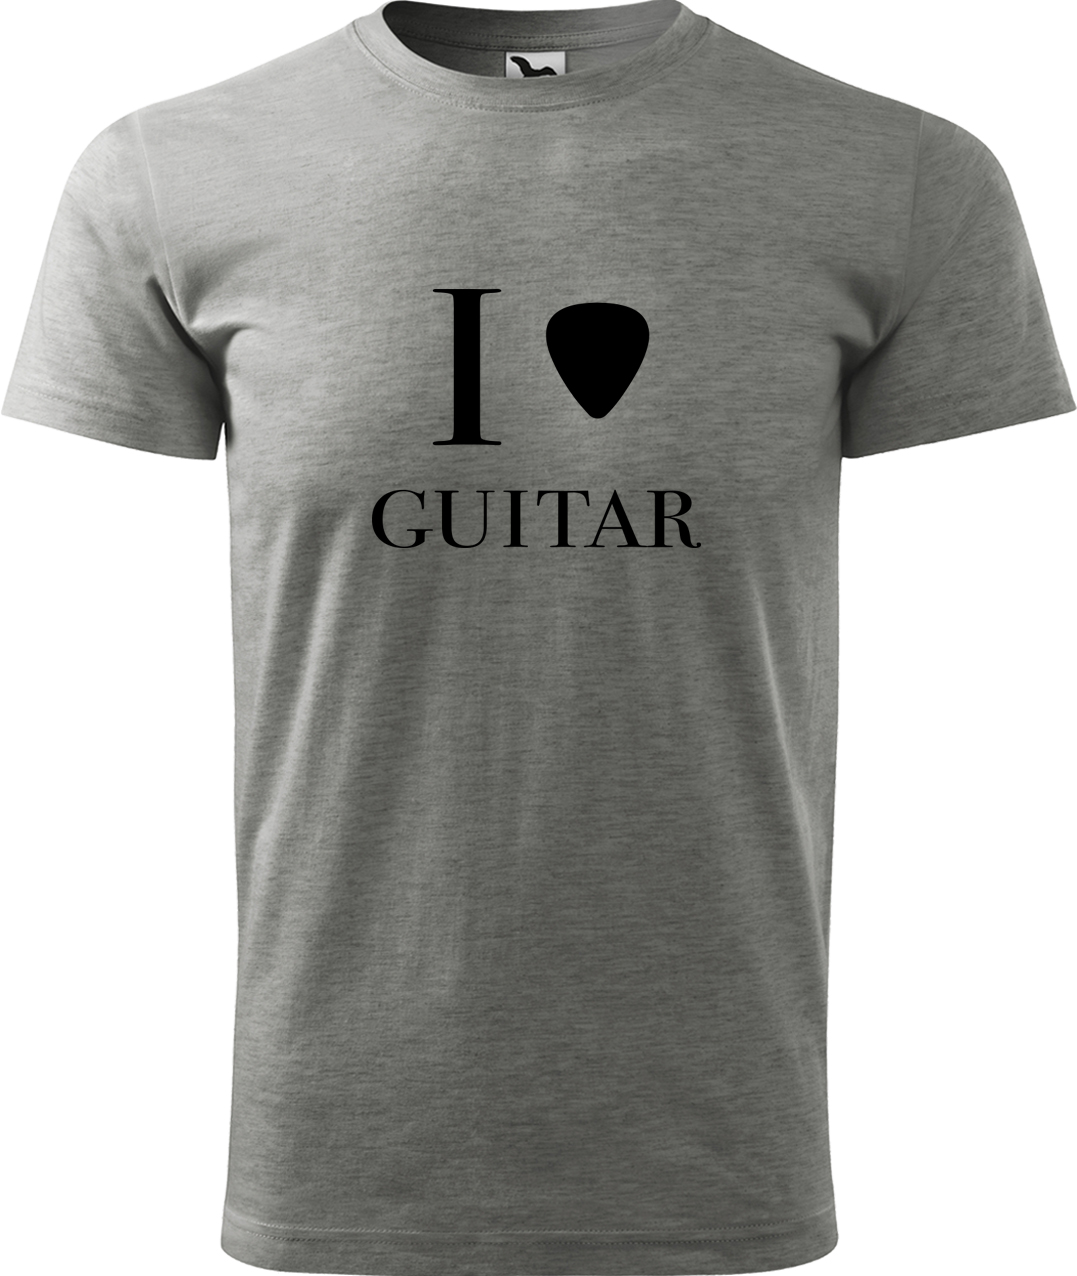 Pánské tričko s kytarou - I love guitar Velikost: 2XL, Barva: Tmavě šedý melír (12), Střih: pánský